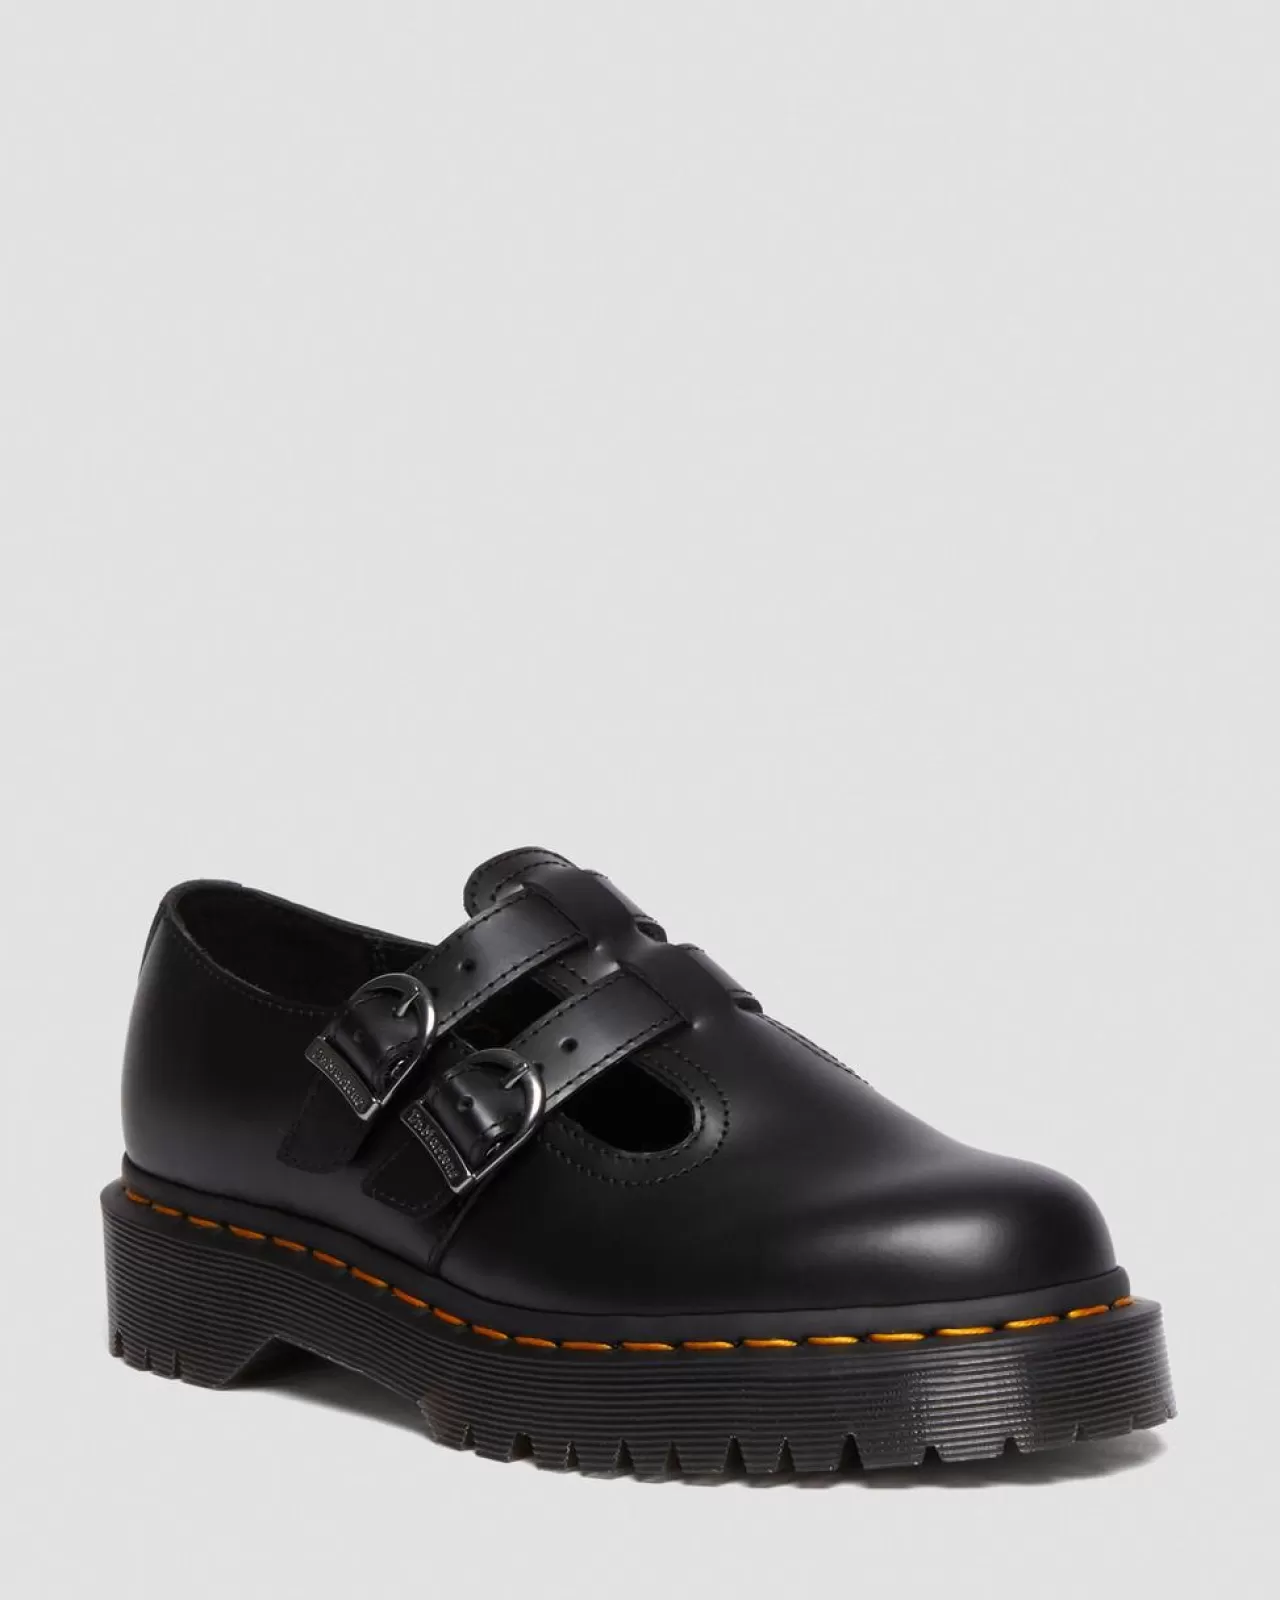 Originals | Platform Shoes^Dr. Martens 8065 II Bex Smooth Leather Platform Mary Jane Shoes Black — Smooth Leather